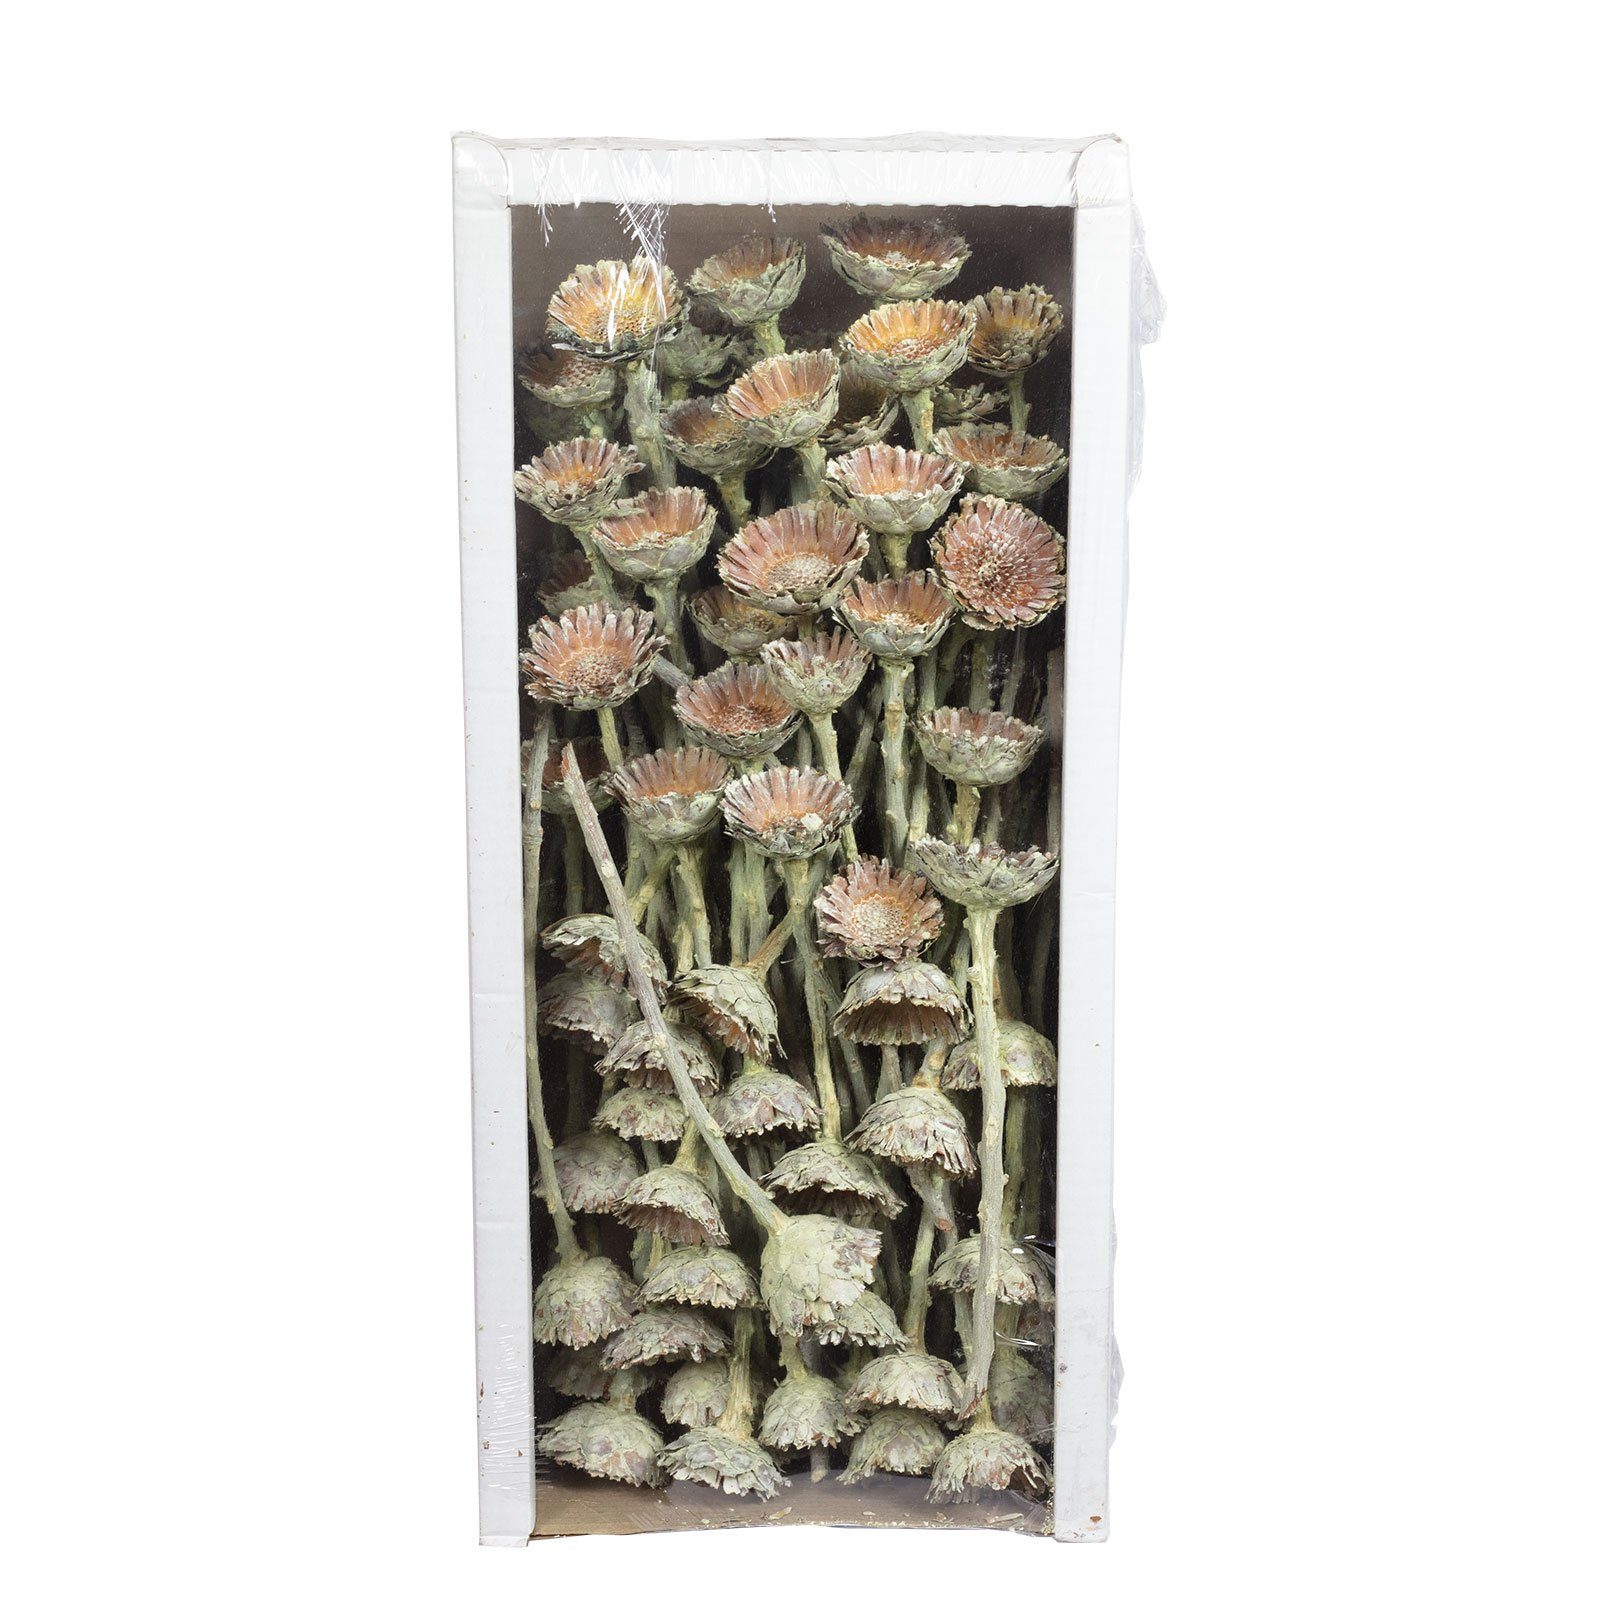 Trockenblume Protea Compacta Rosette - 70 Stück - frost-grün, Vosteen